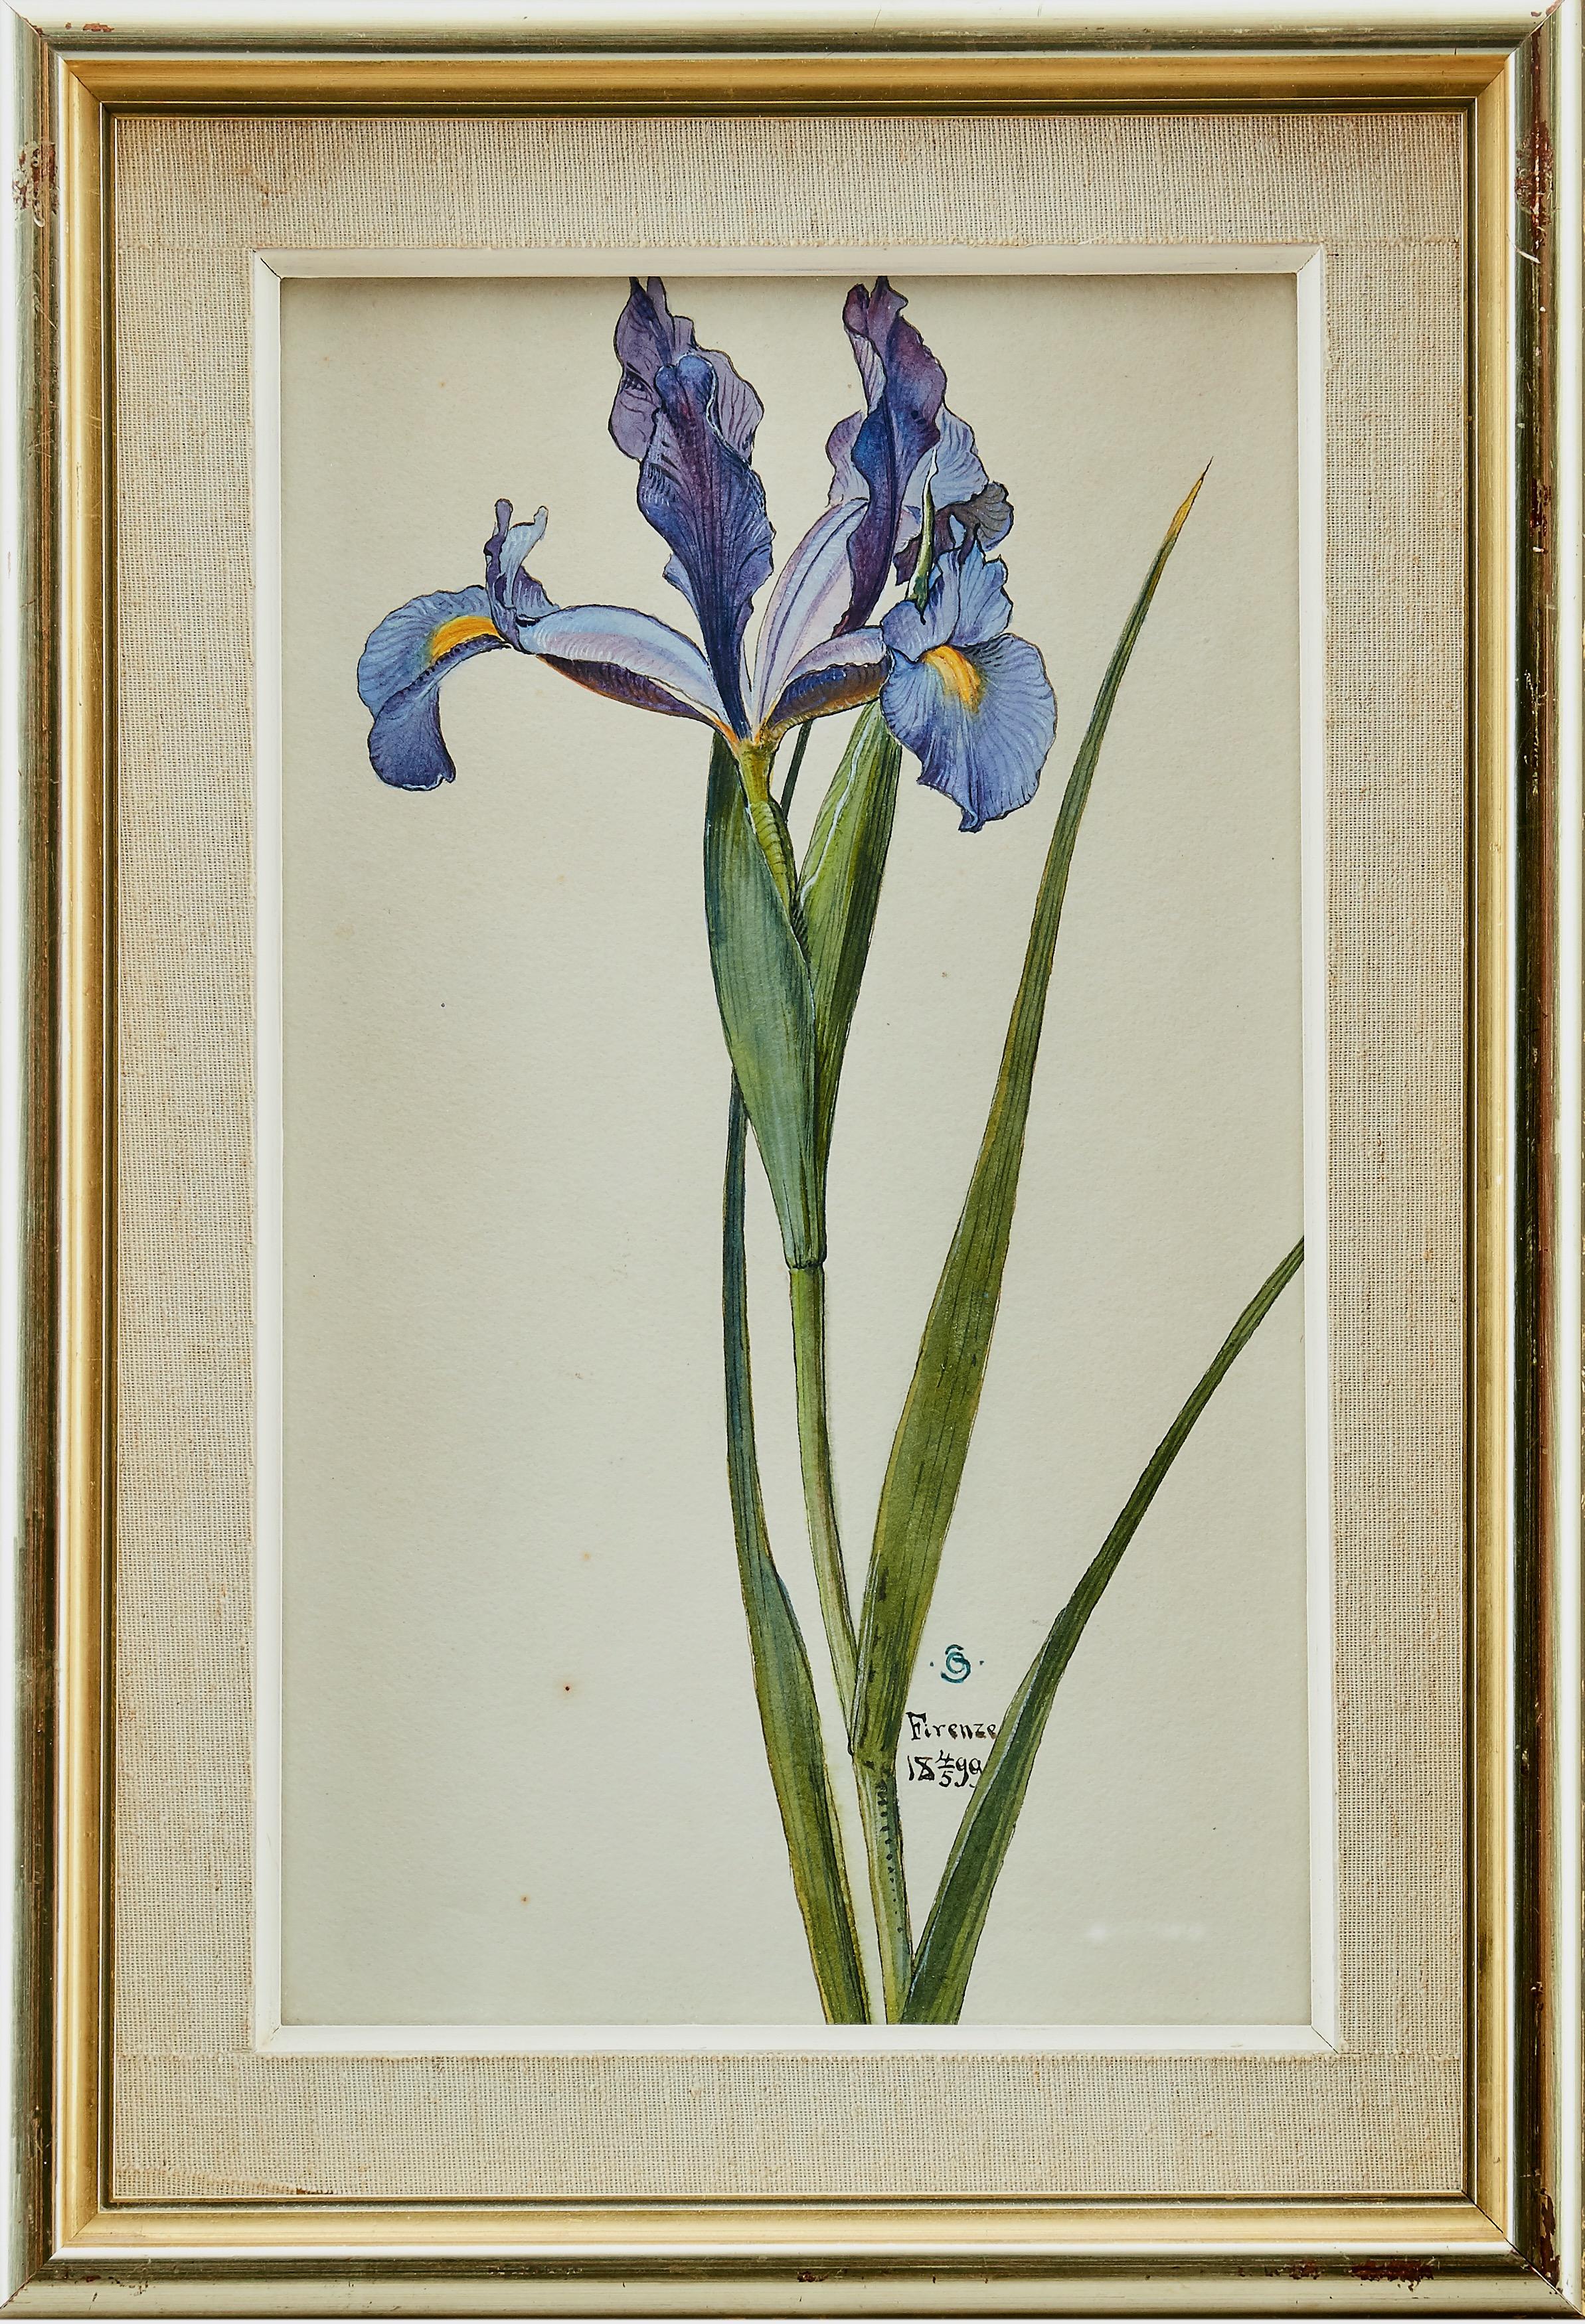 Une belle aquarelle d'un iris peinte par Otto Strandman (1871-1960). Signé avec le monogramme "OS" et daté "Firenze 1899". Aquarelle et gouache sur papier. 

Otto Strandman a fait ses études à l'École supérieure de design et d'artisanat de Göteborg